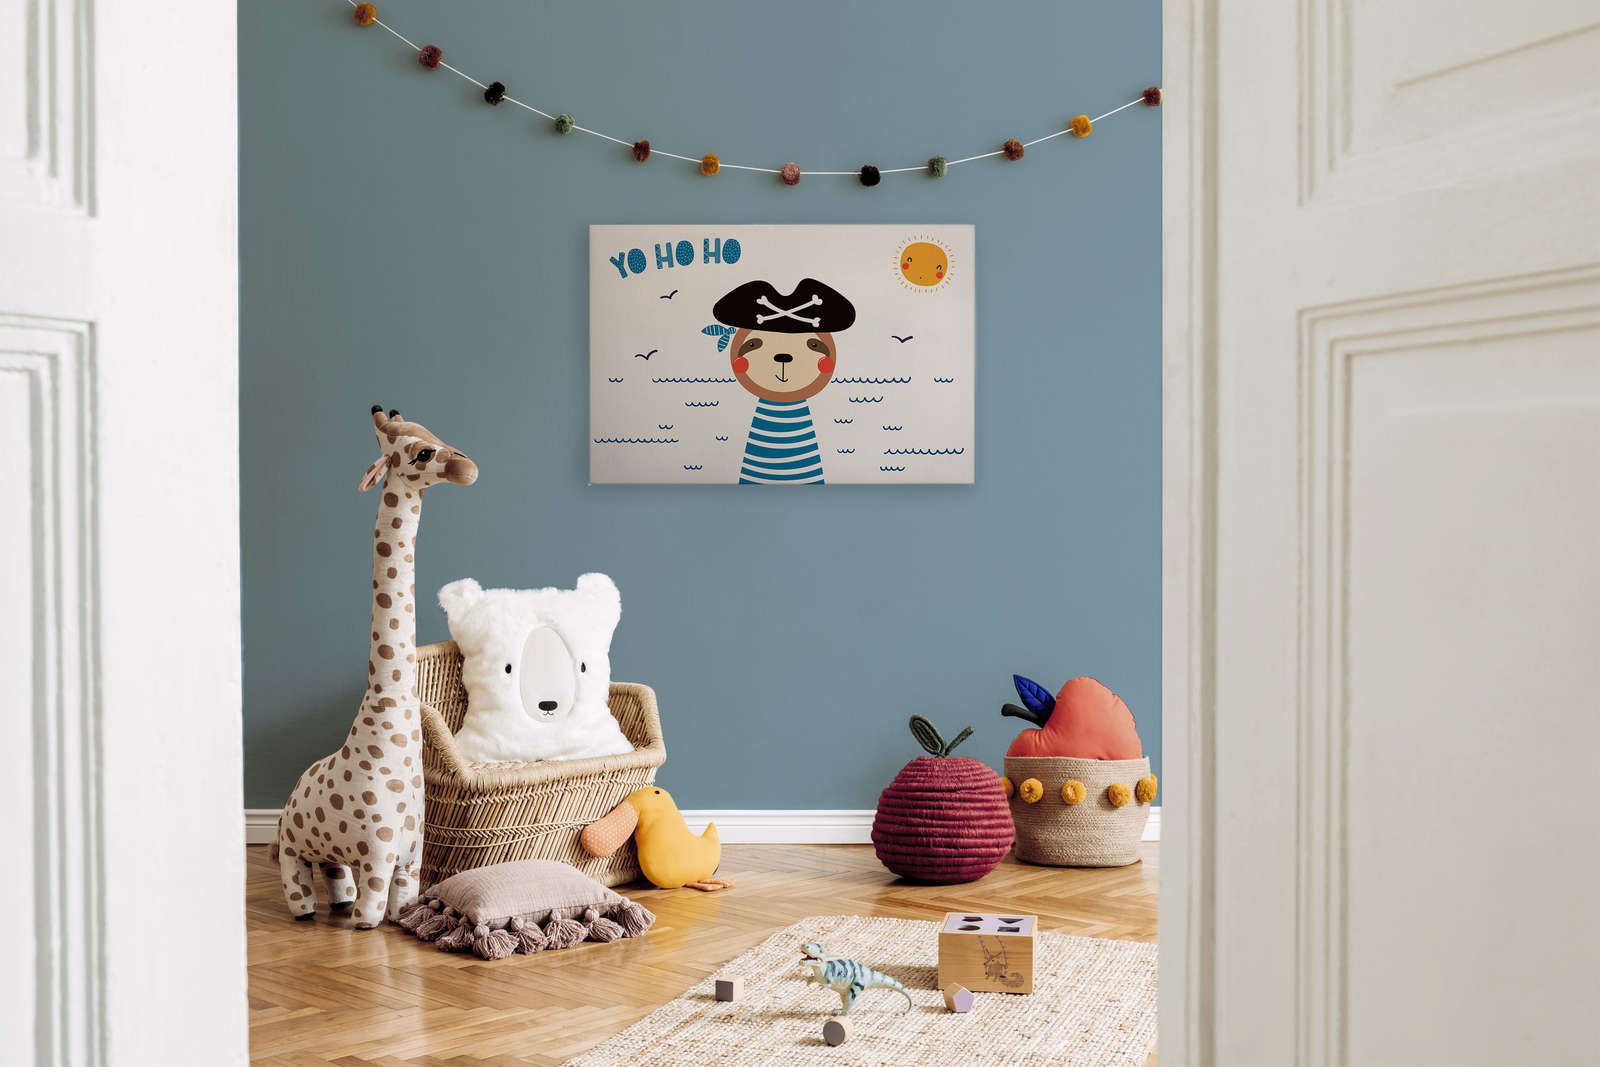             Tela per la camera dei bambini con orso pirata - 90 cm x 60 cm
        